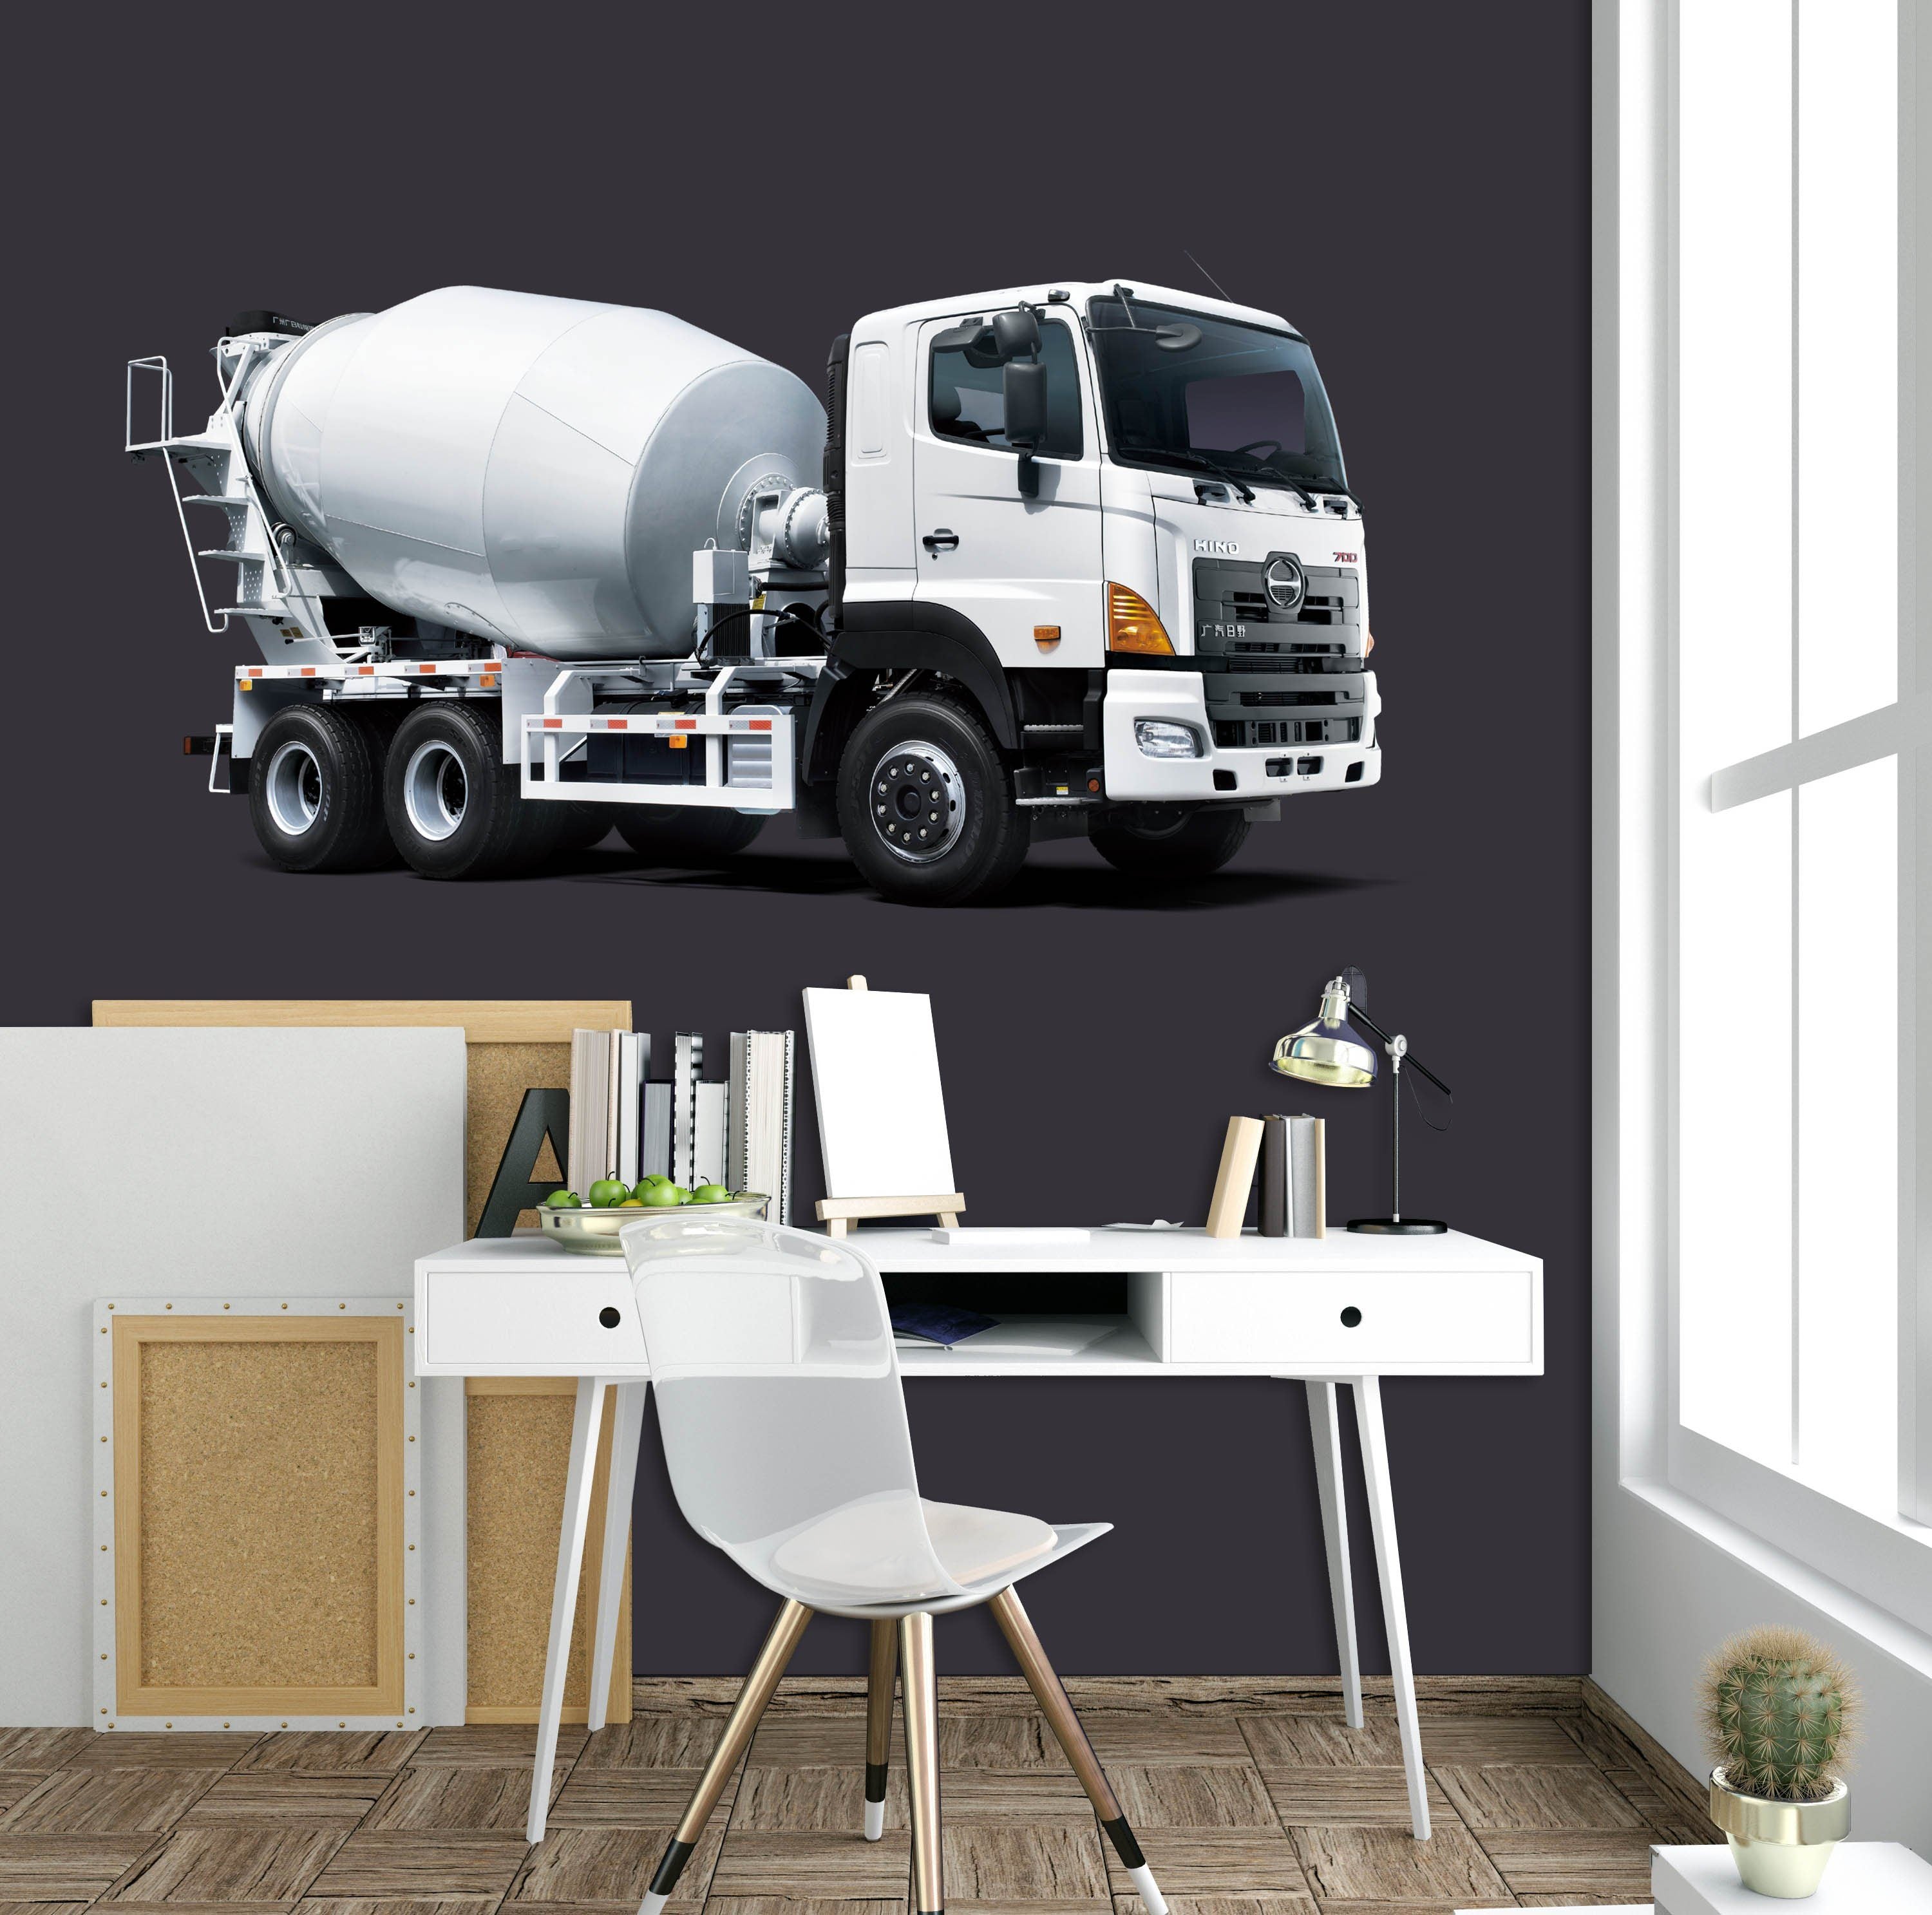 3D Mixer 0016 Vehicles Wallpaper AJ Wallpaper 